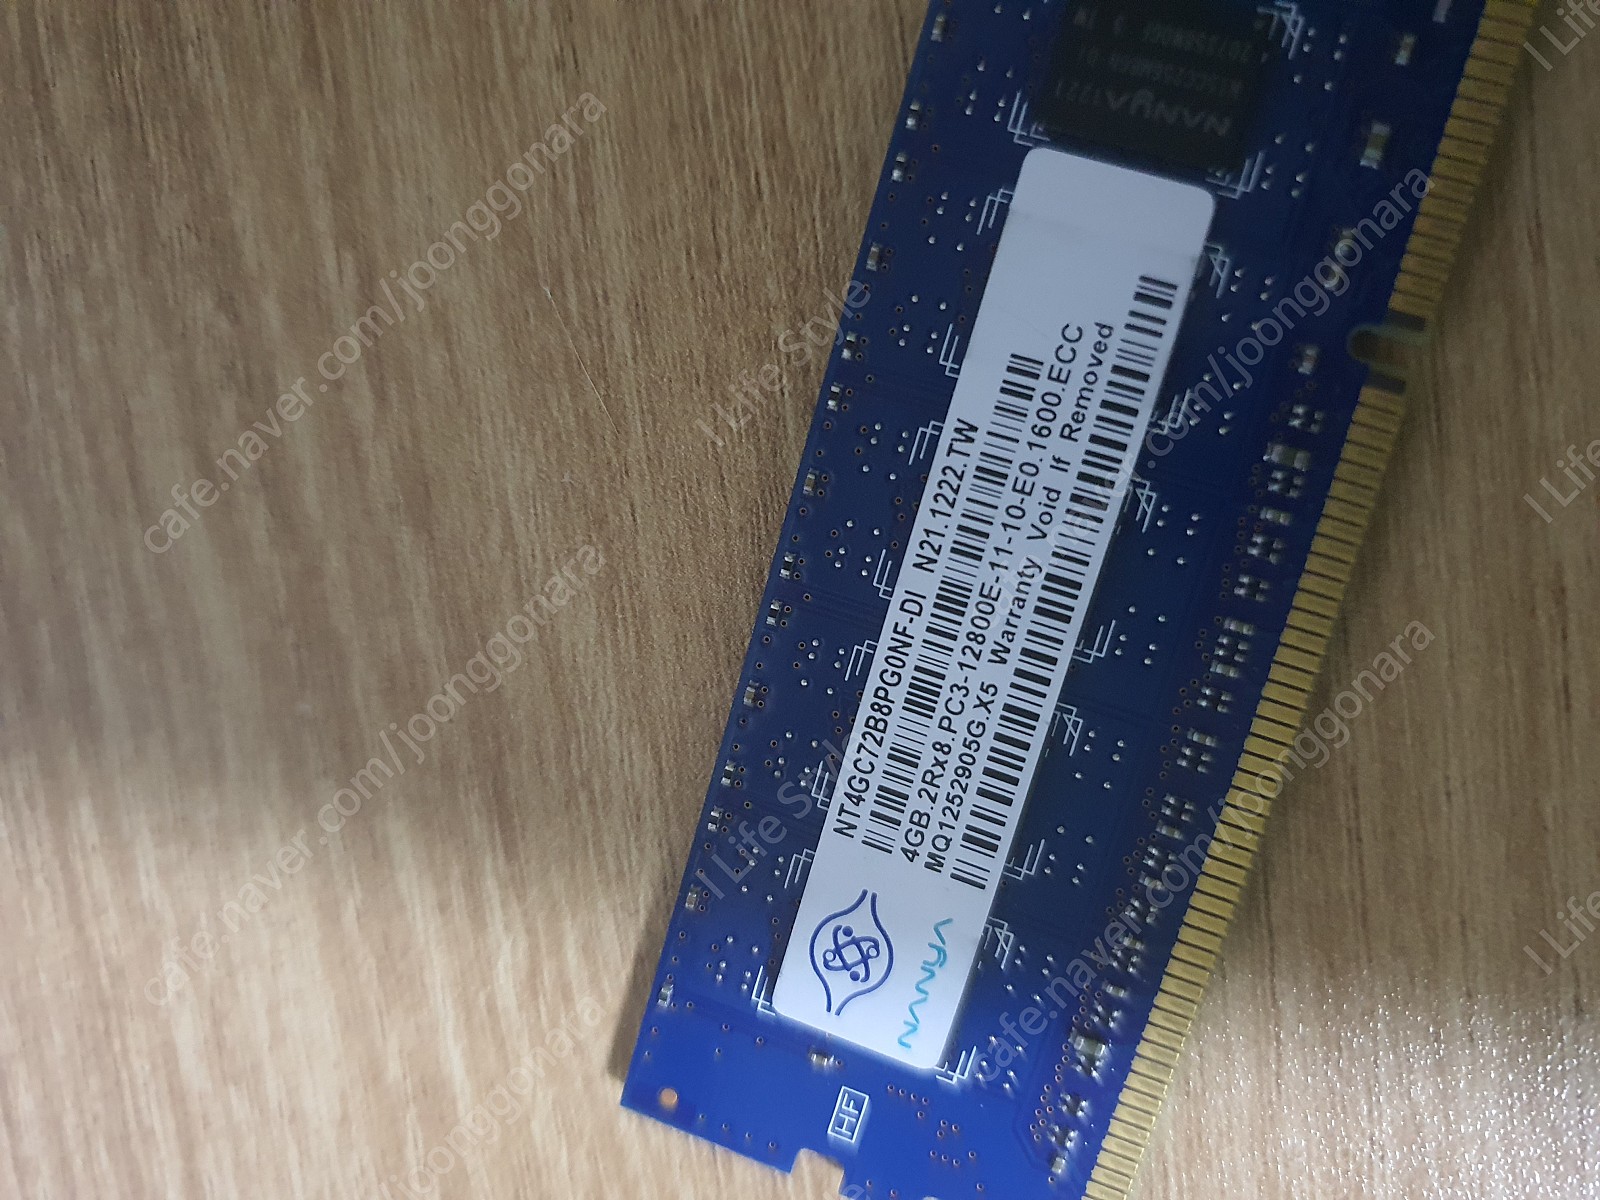 [급처] 메모리 PC3-12800E 4G 판매 합니다.